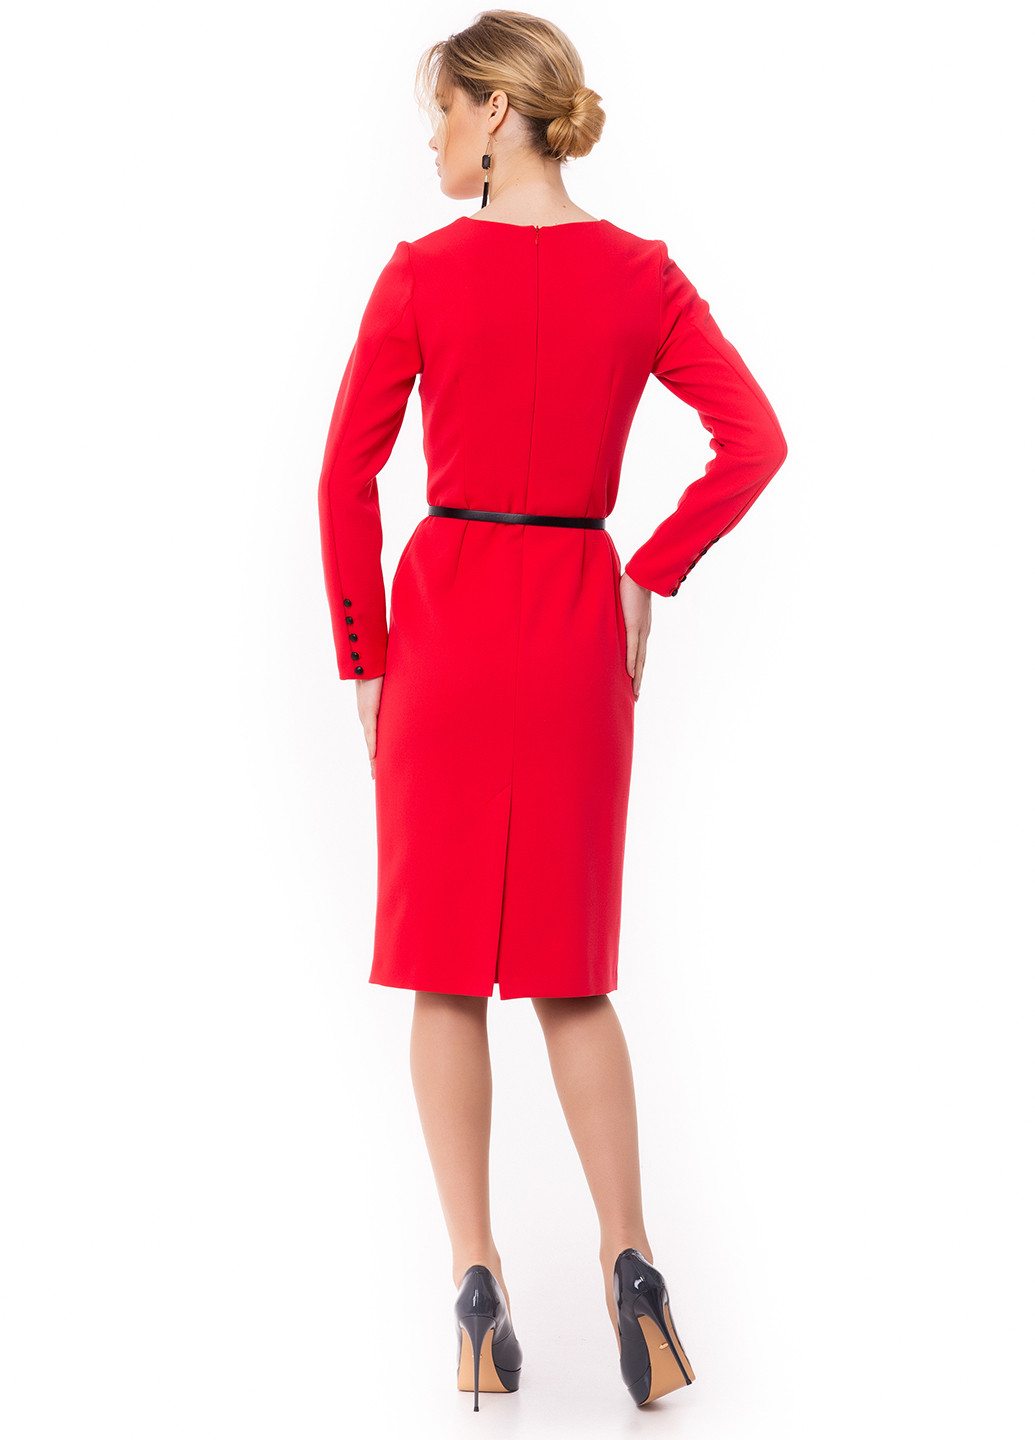 Красное коктейльное платье футляр Iren Klairie однотонное